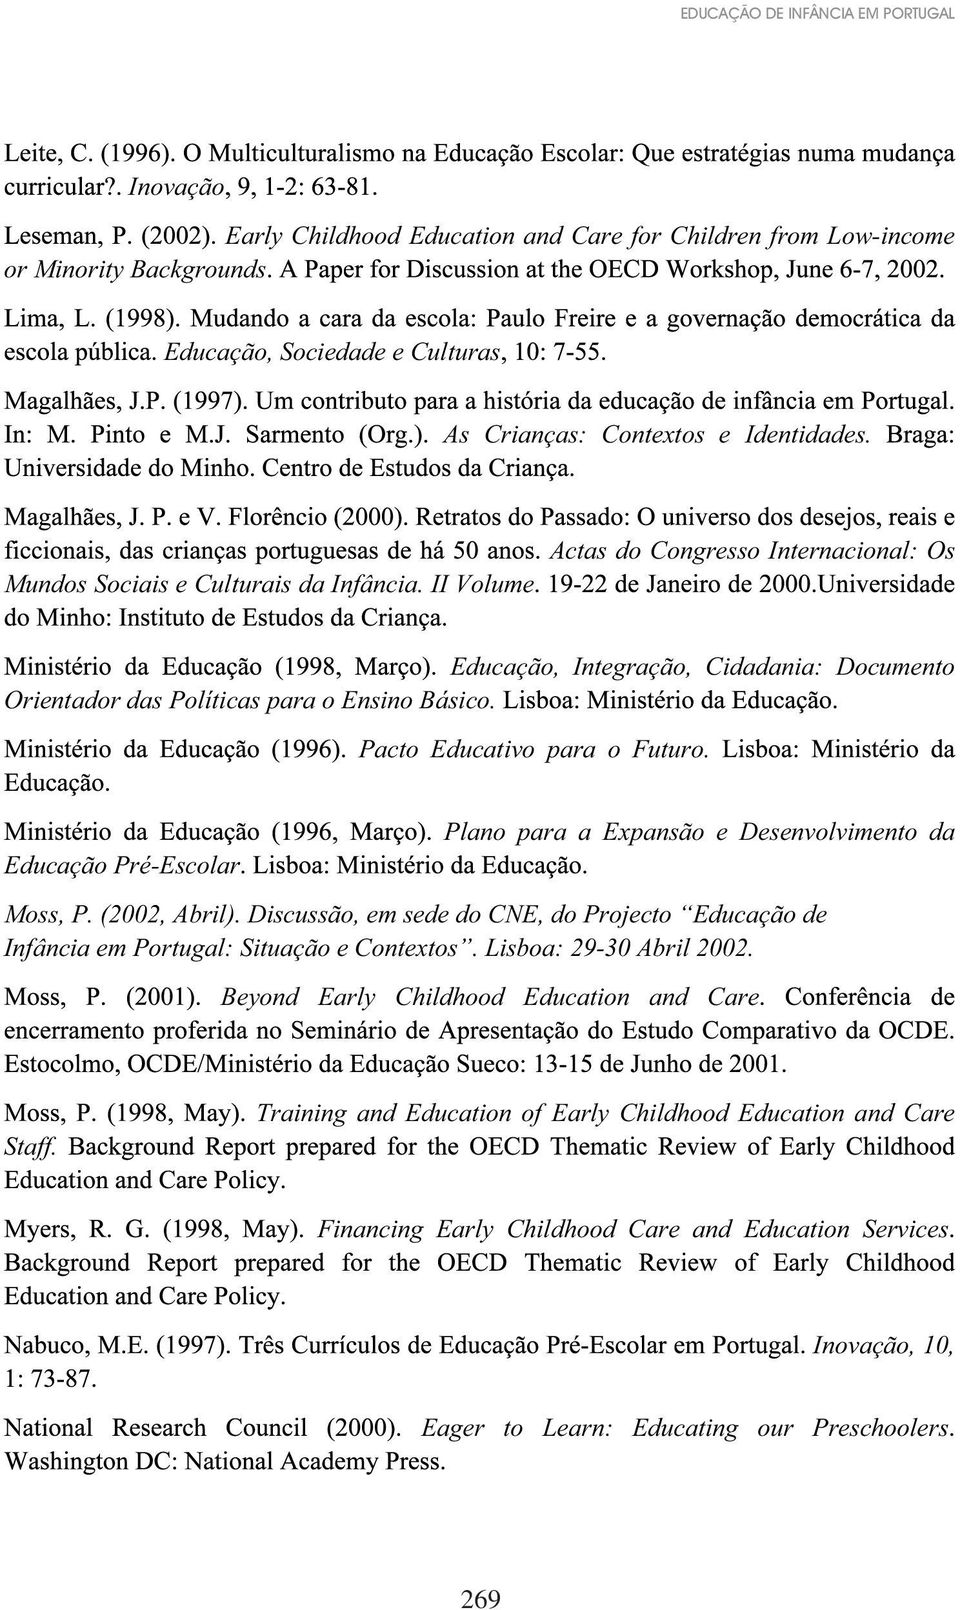 Pacto Educativo para o Futuro. Educação Pré-Escolar Plano para a Expansão e Desenvolvimento da Moss, P. (2002, Abril).